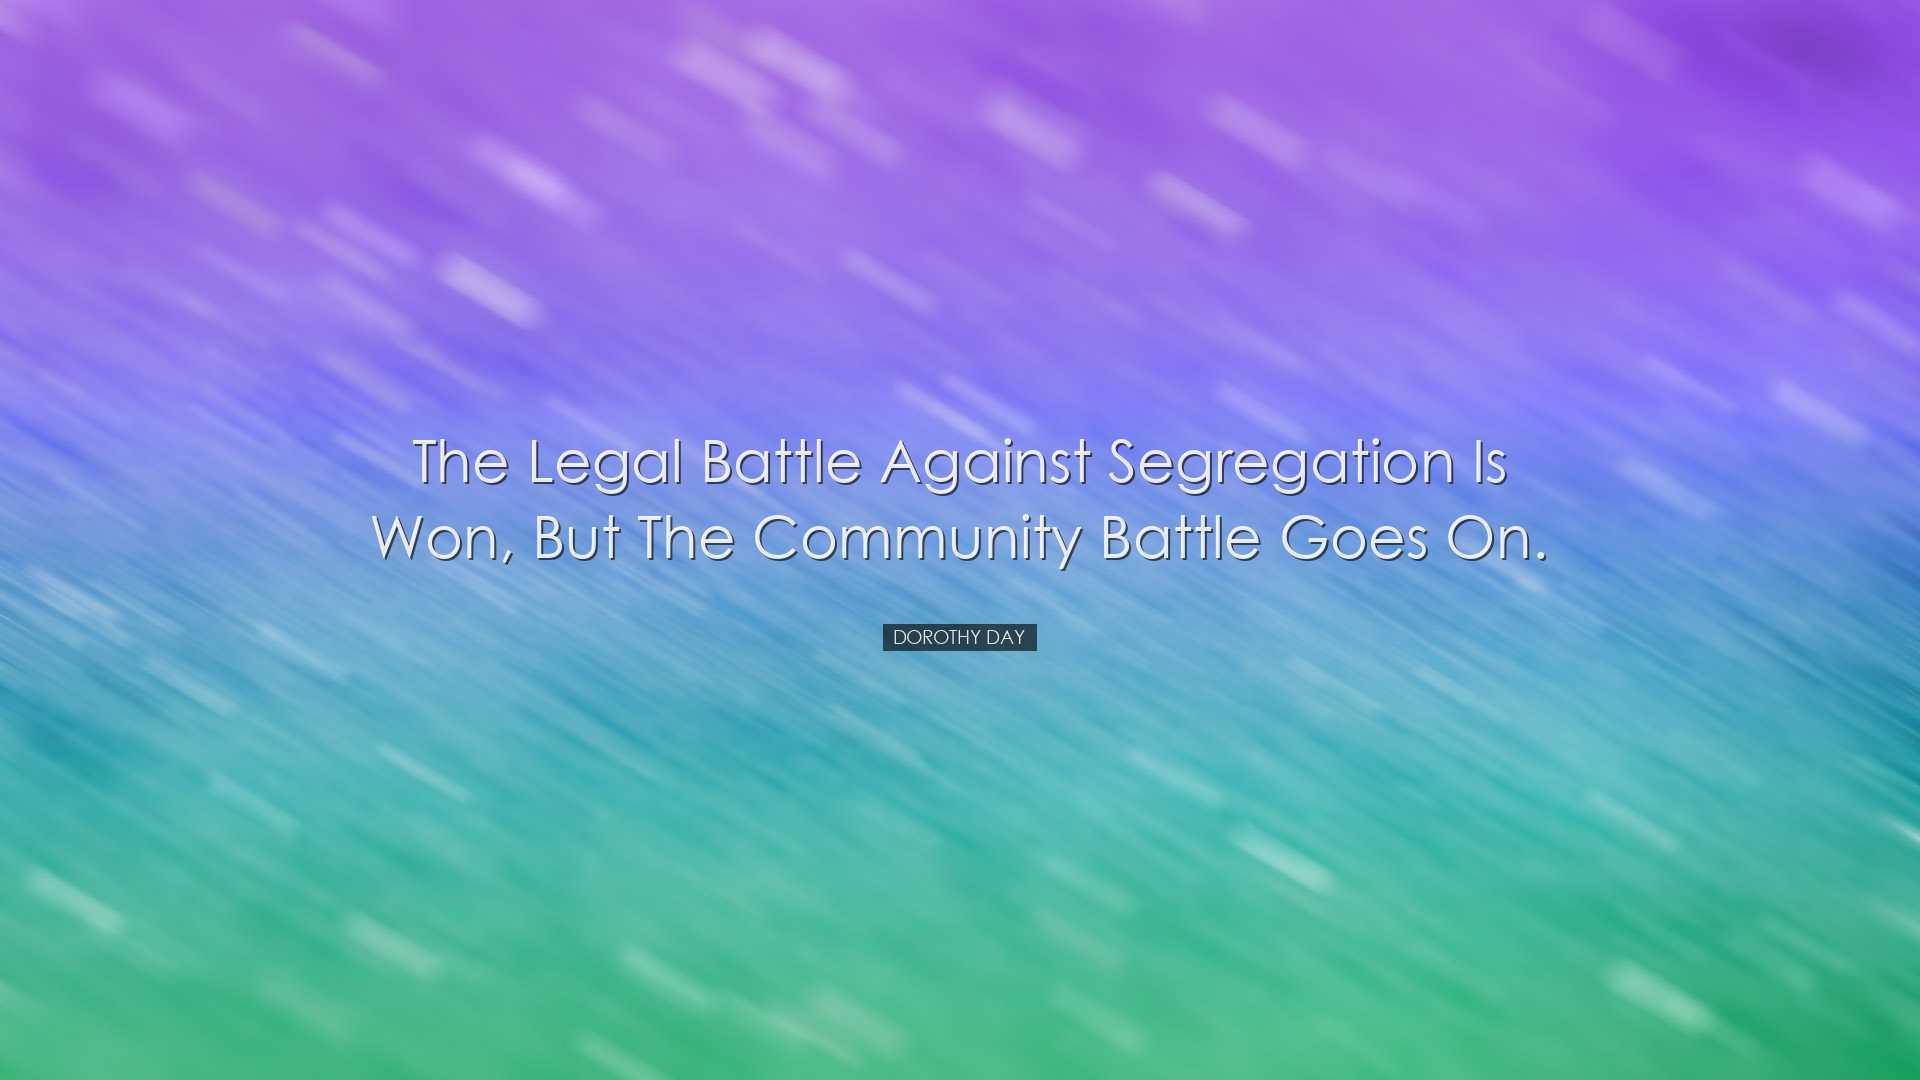 The legal battle against segregation is won, but the community bat